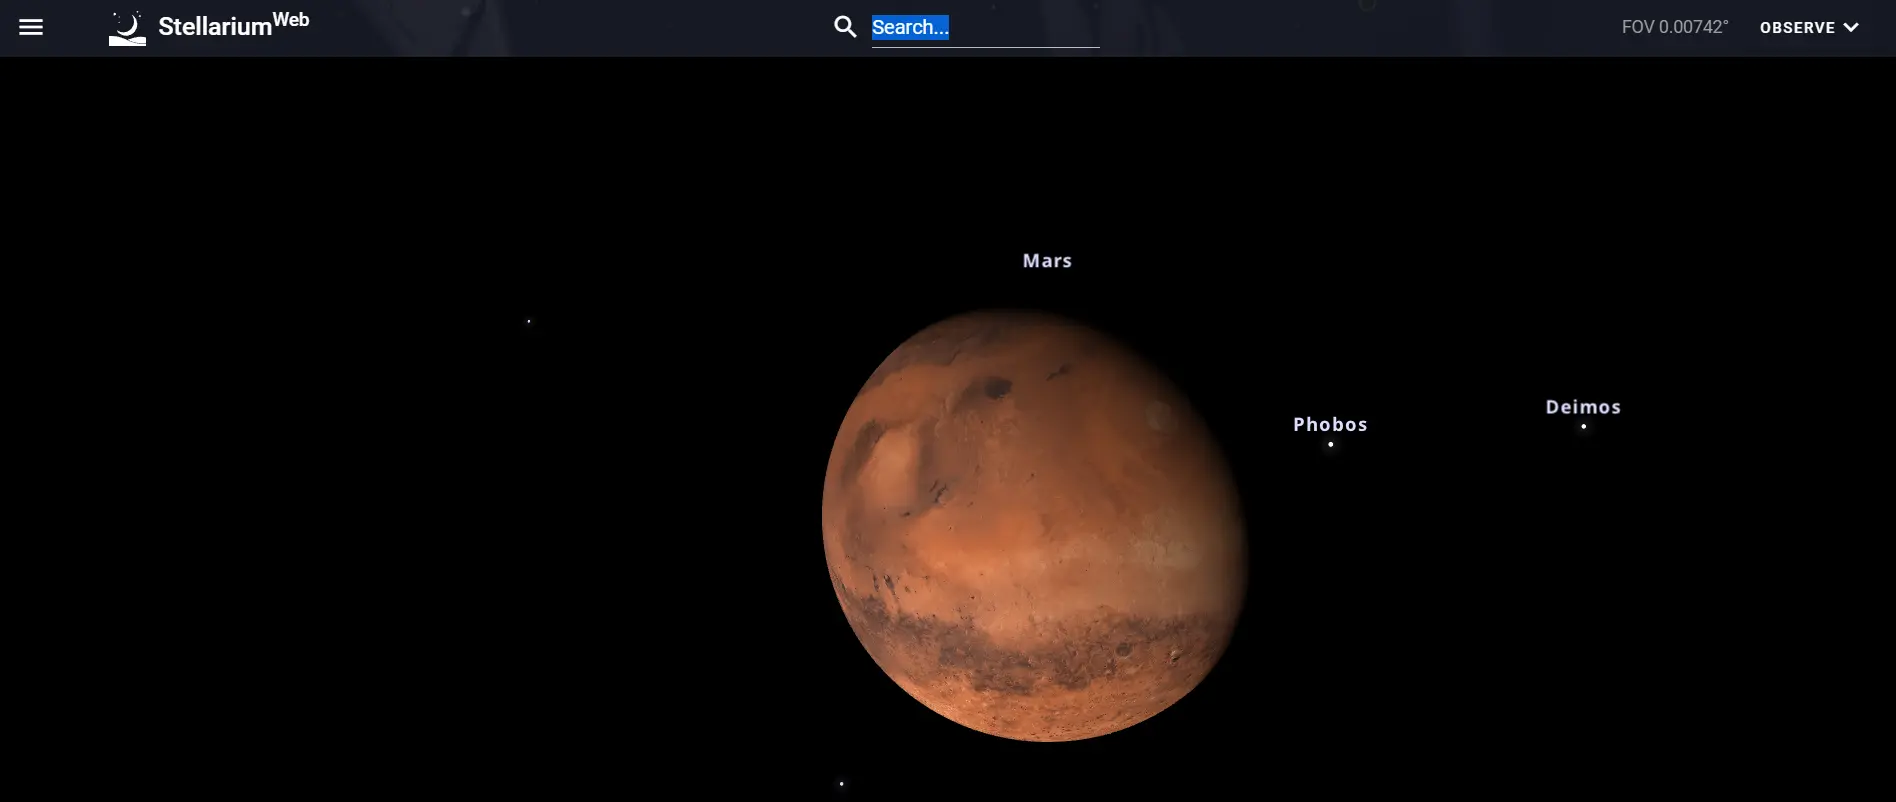 Stellarium online - Photography of Mars in Stellarium